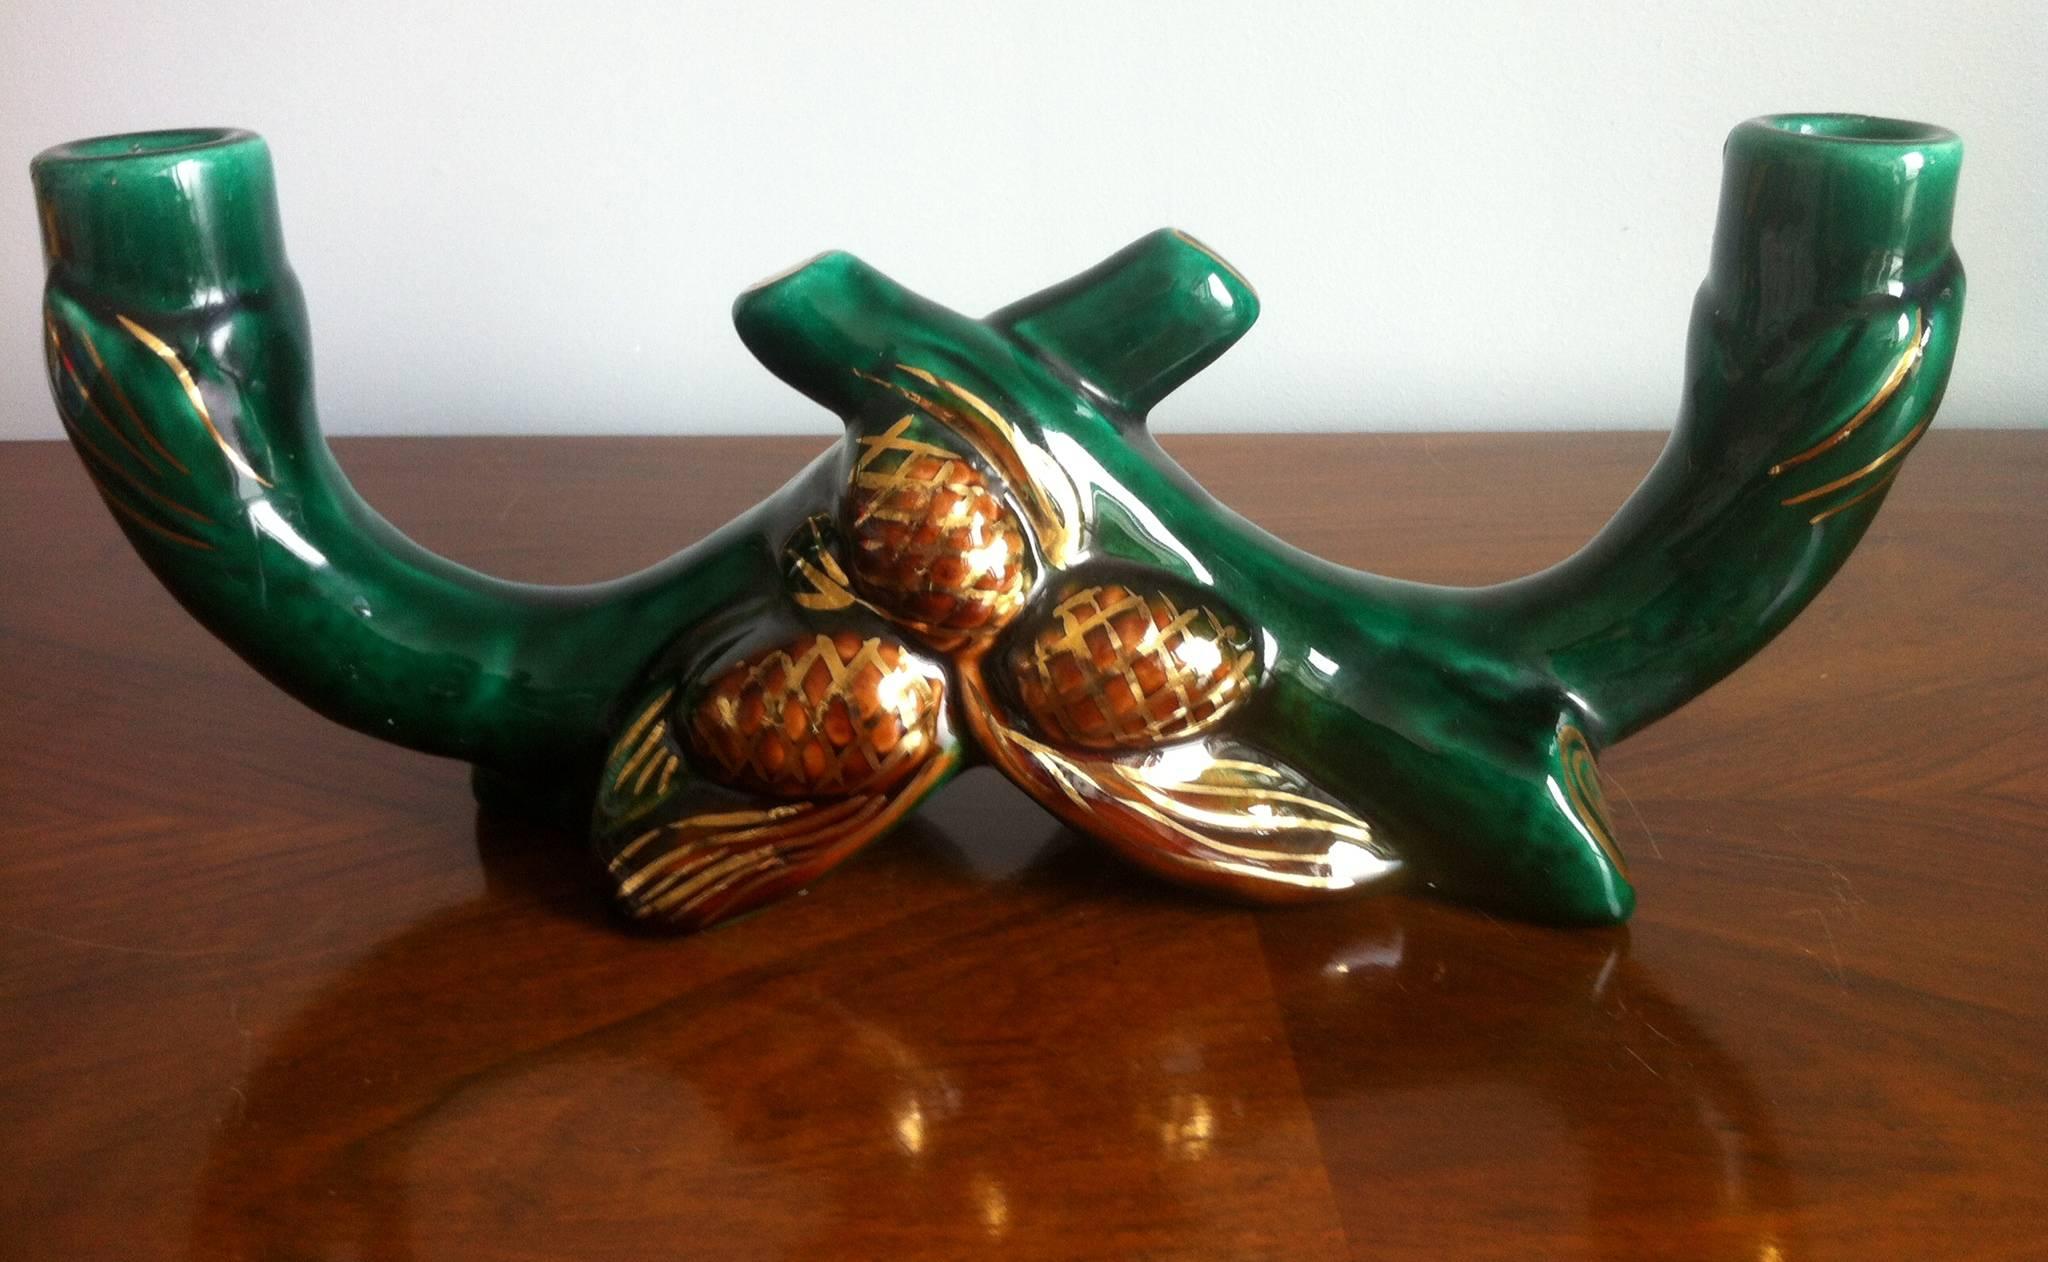 Zwei Paare von doppelten Original Vallauris Französisch Mitte des Jahrhunderts Keramik doppelte Kerzenhalter schön in einem tiefen Grün und Goldfarben Ornamente und goldenen Pinienkernen verziert.

Unterzeichnet RB, Frankreich.